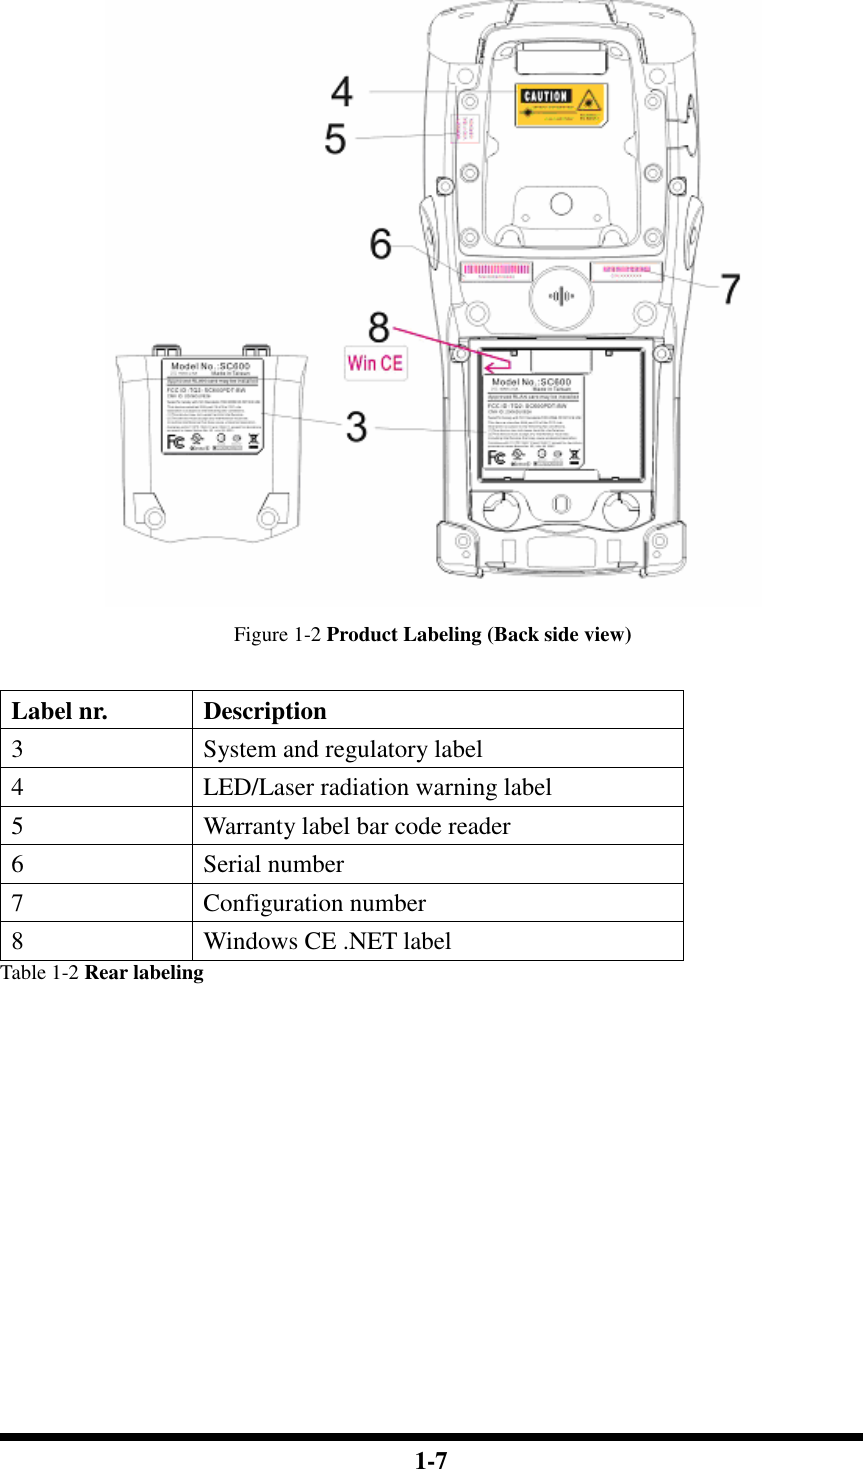  1-7   Figure 1-2 Product Labeling (Back side view)  Label nr.  Description 3  System and regulatory label 4  LED/Laser radiation warning label 5  Warranty label bar code reader 6  Serial number 7  Configuration number 8  Windows CE .NET label Table 1-2 Rear labeling            